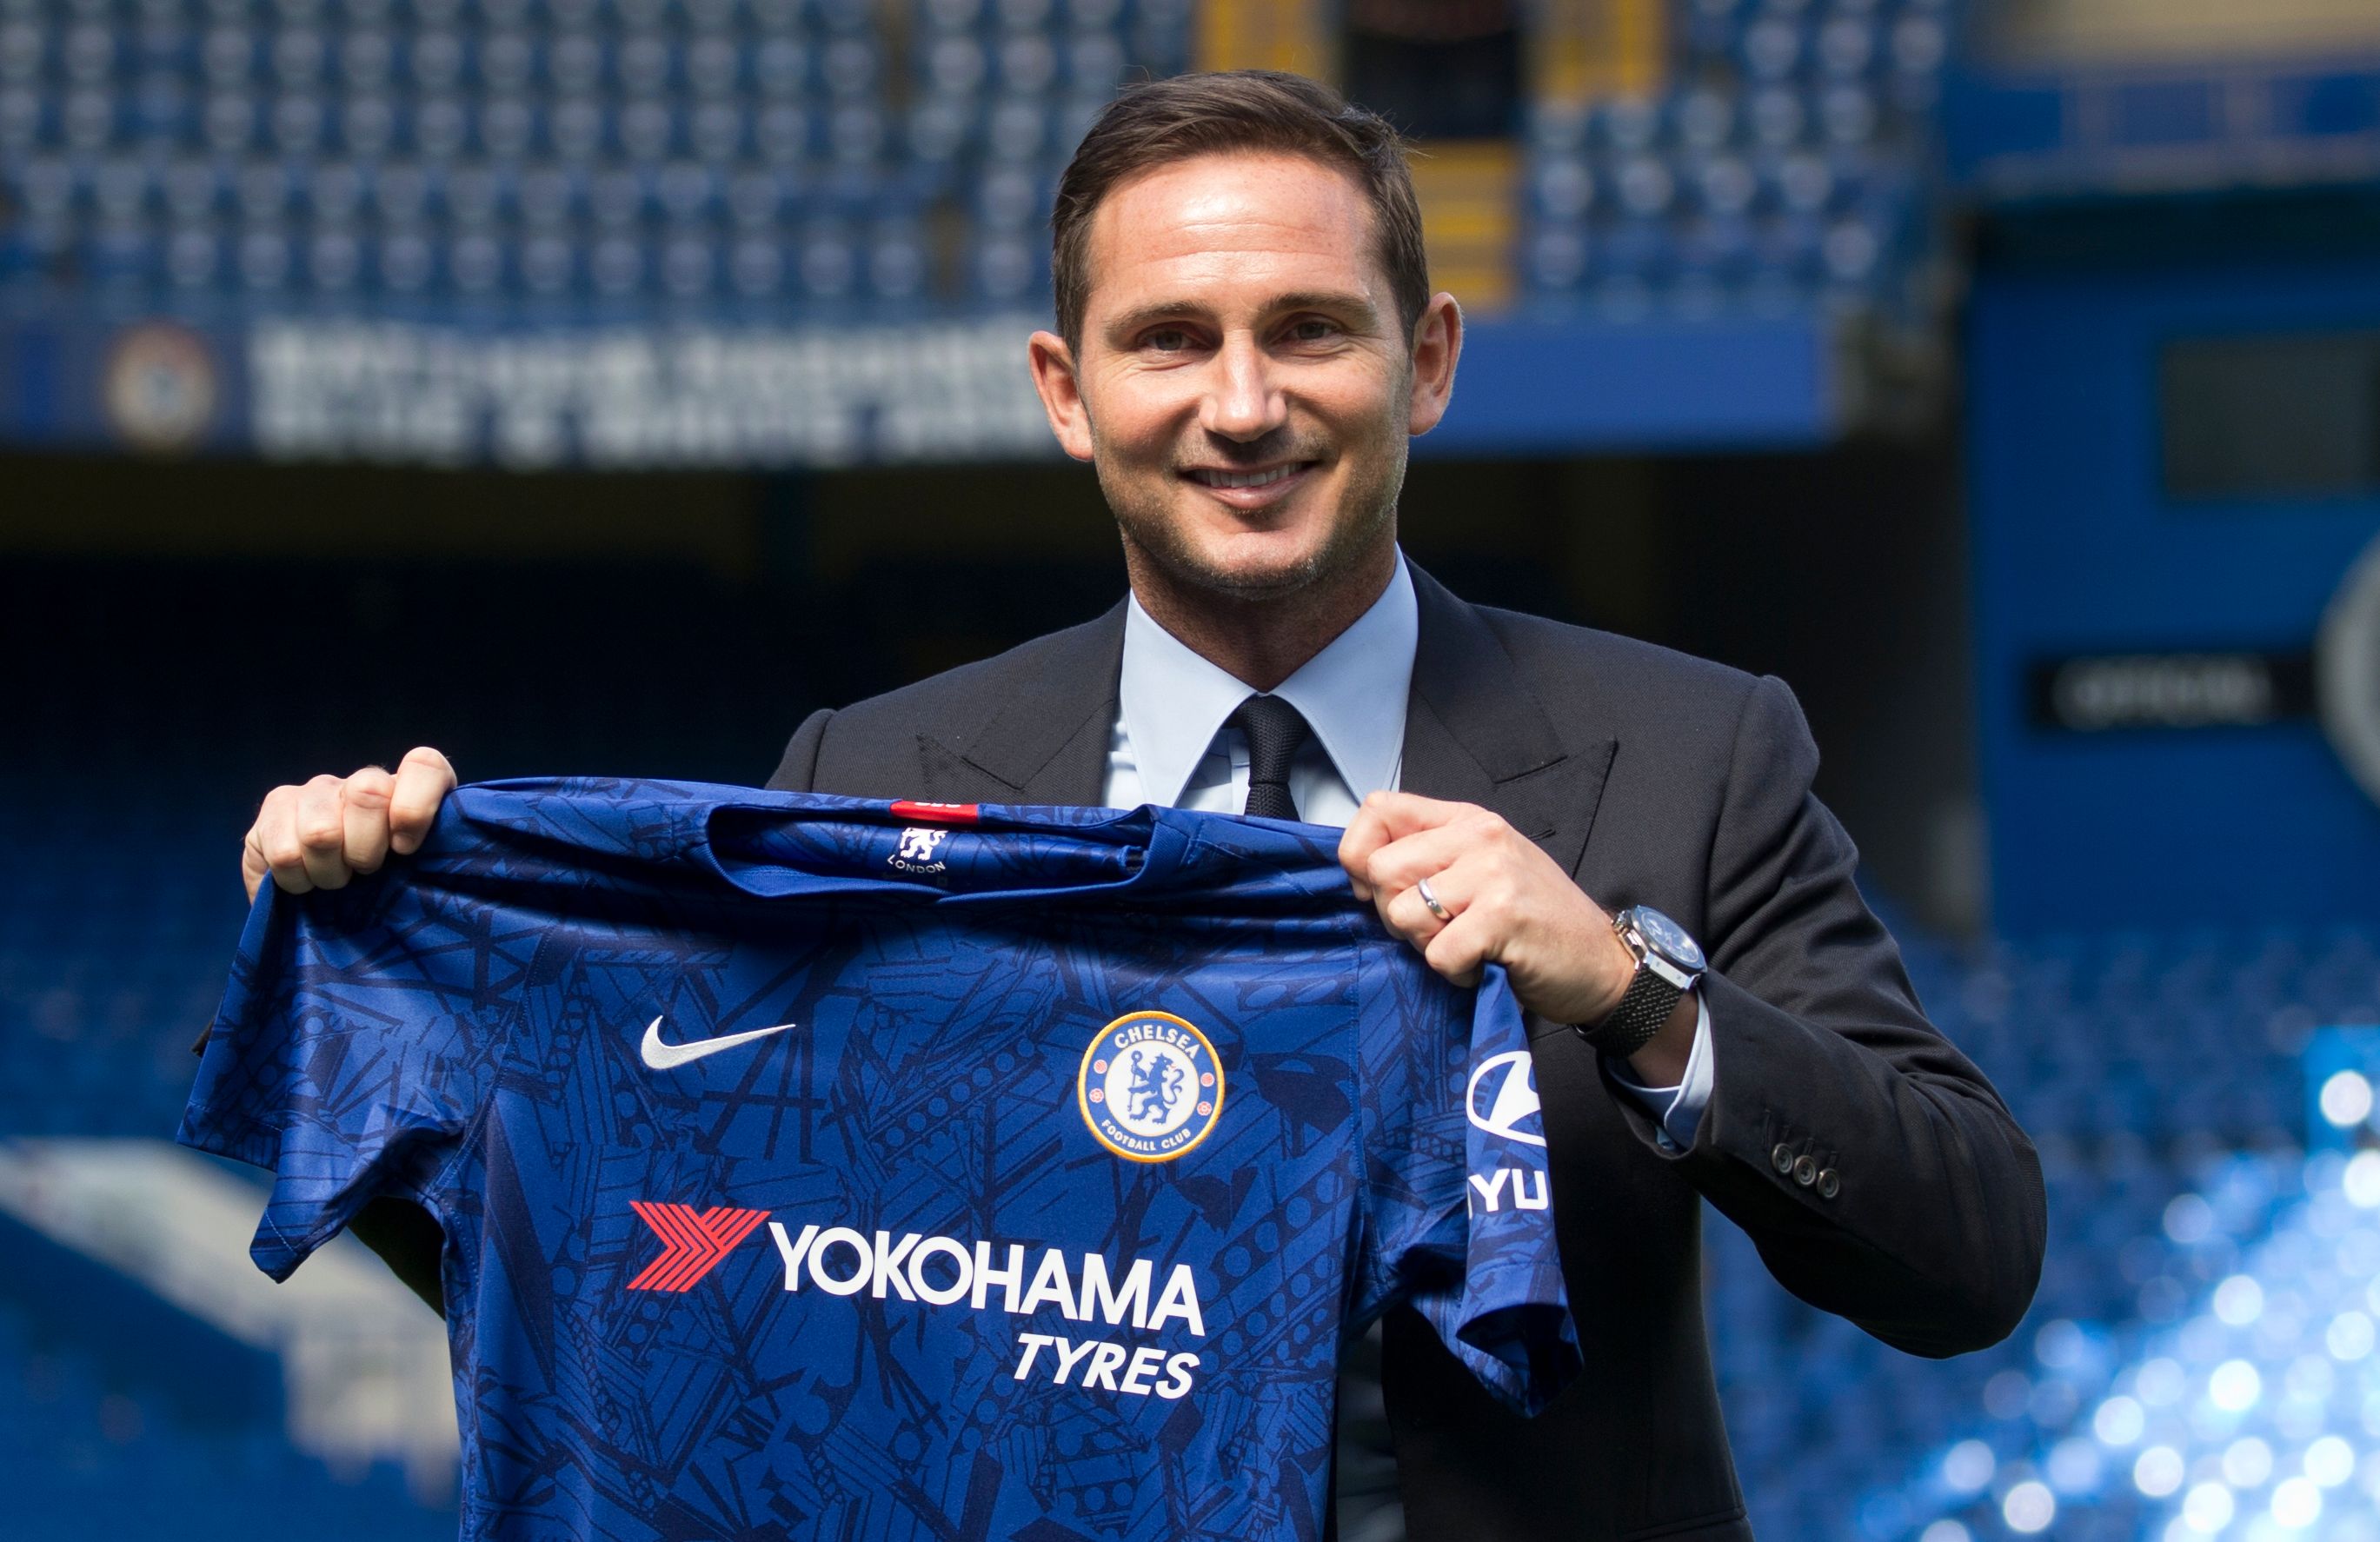 El Chelsea confirmó la contratación de su exjugador Frank Lampard como su nuevo entrenador (Foto Prensa Libre: AFP)